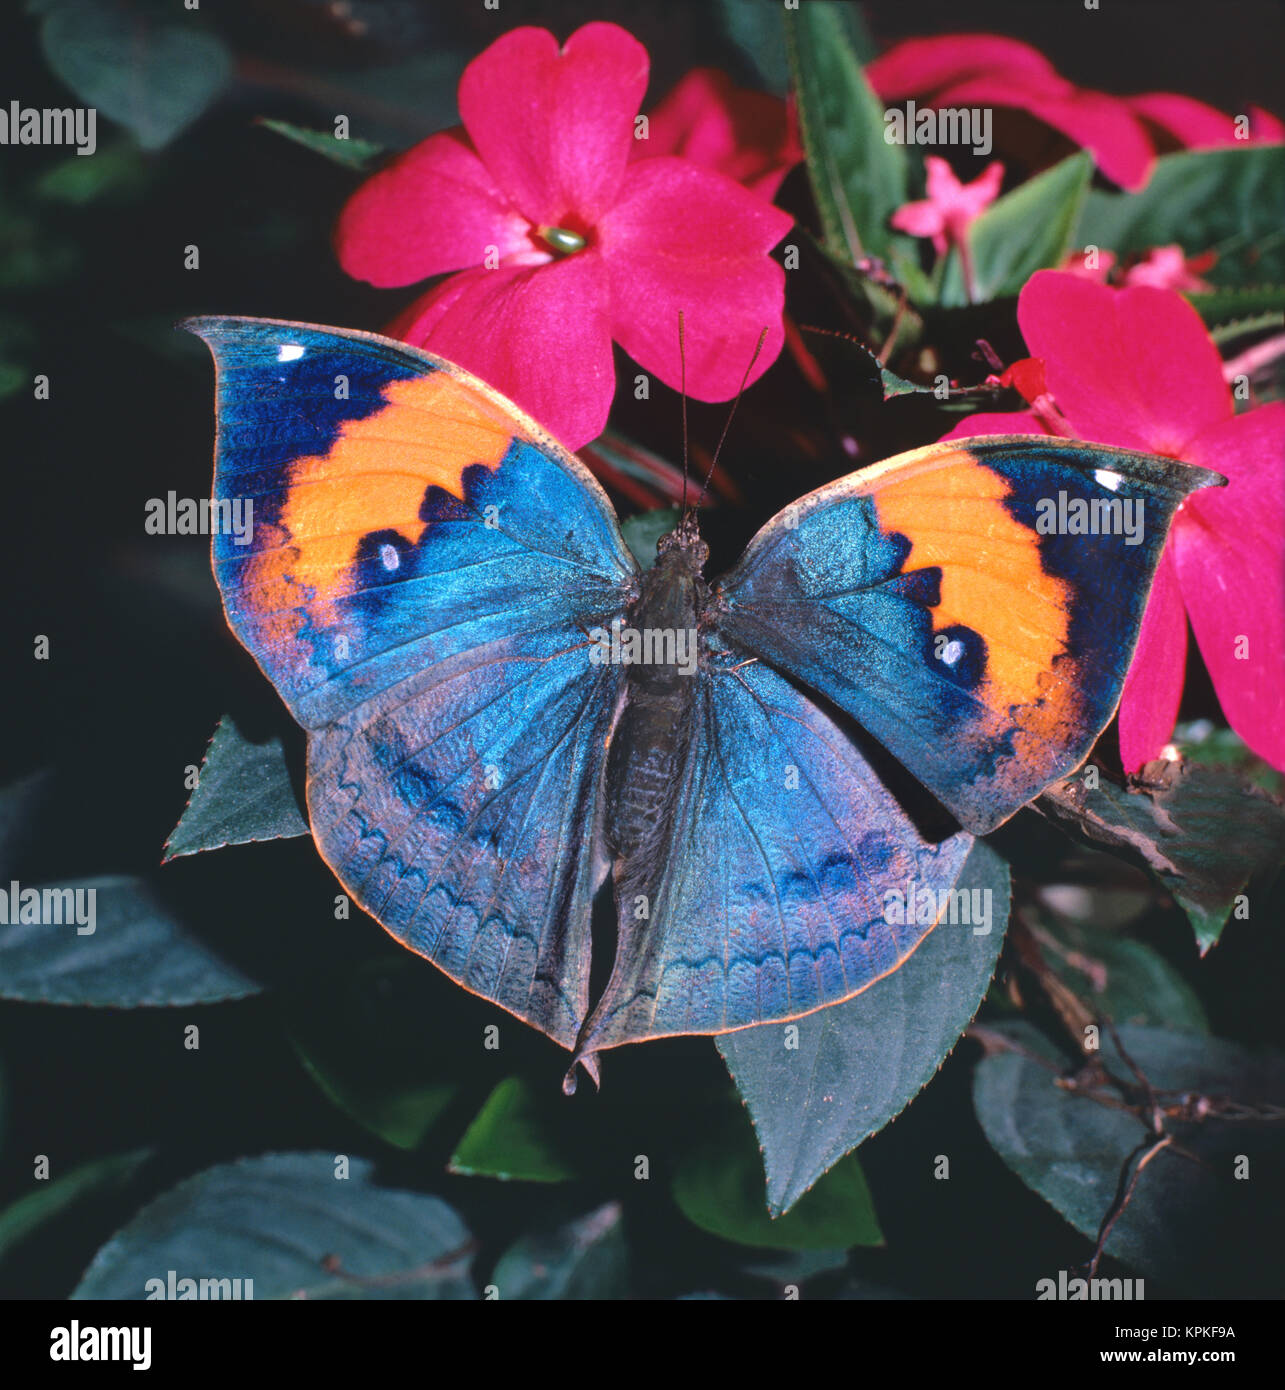 Ein blau schillernder Blattschmetterling sitzt mit geöffneten Flügeln auf einer Blüte. Der Falter fliegt in den Wäldern von Taiwan. Mit geschlossenen Flügeln imitiert er  perfekt ein trockenes Blatt, ein gutes Beispiel für Mimese. Der Schmetterling mißt spannend etwa 70mm, er saugt gern am Saft überreifer Bananen. Stock Photo